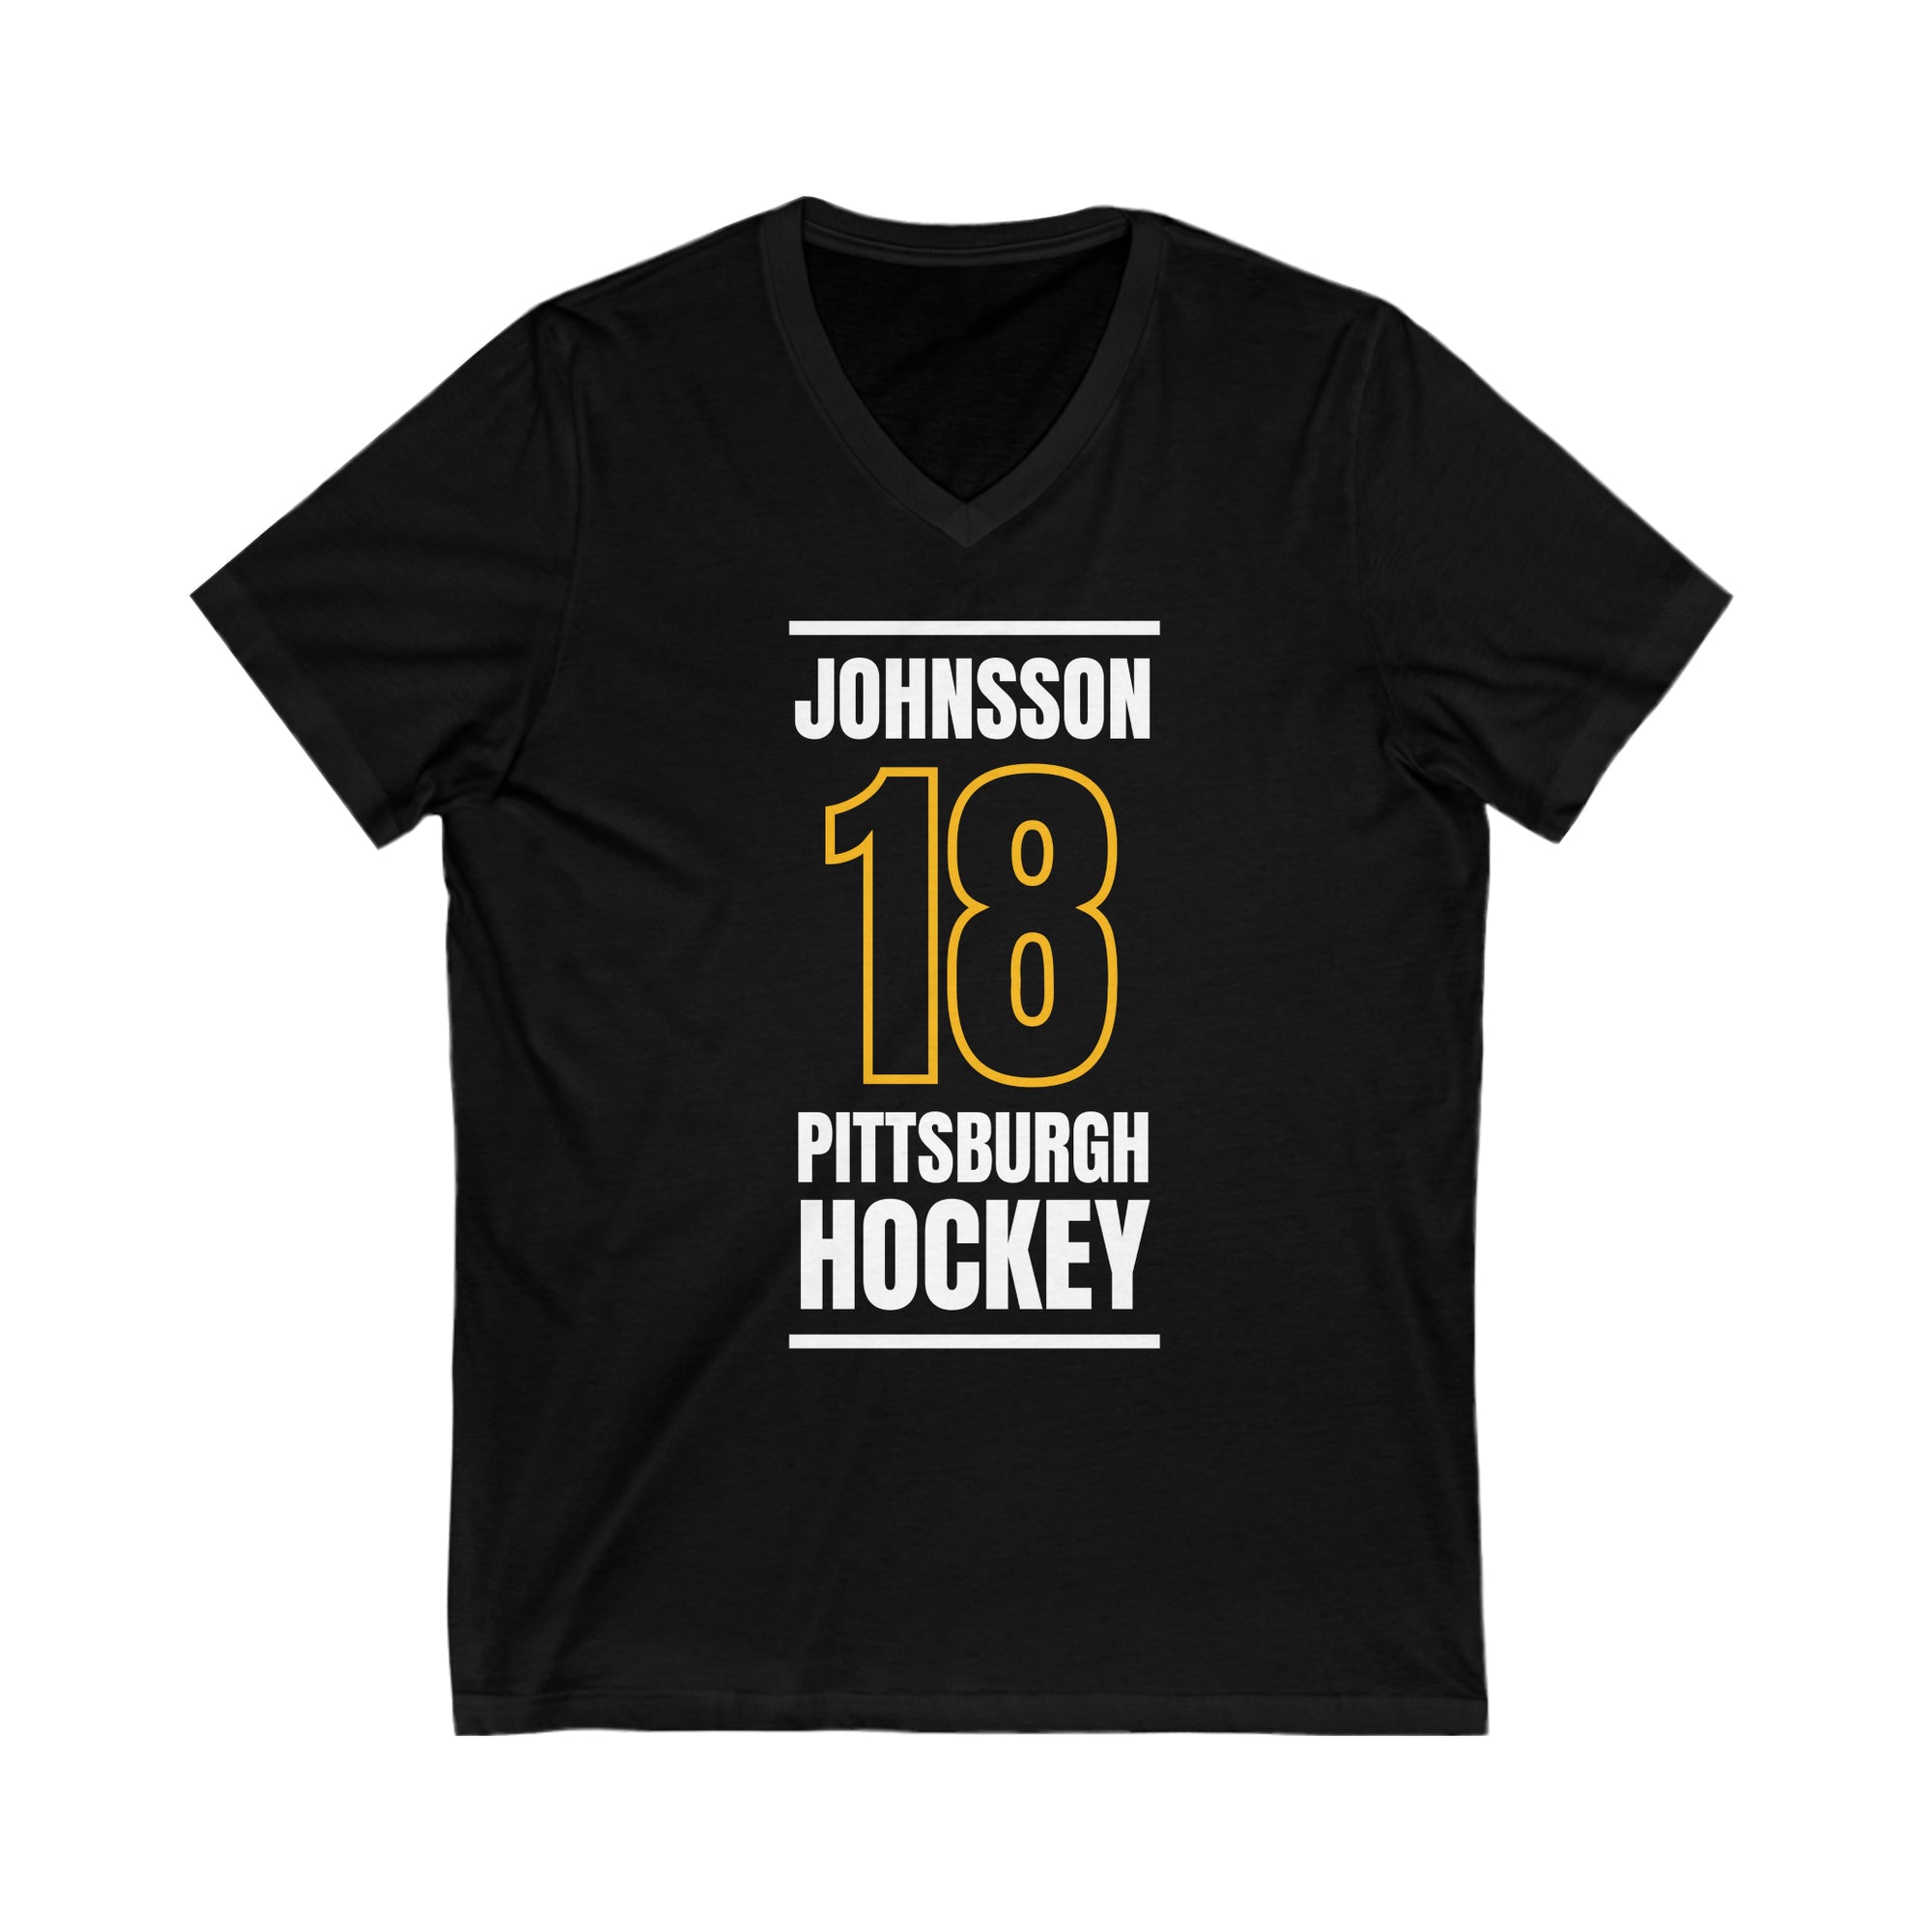 Johnsson 18 Pittsburgh Hockey Black Vertical Design Unisex V-Neck Tee